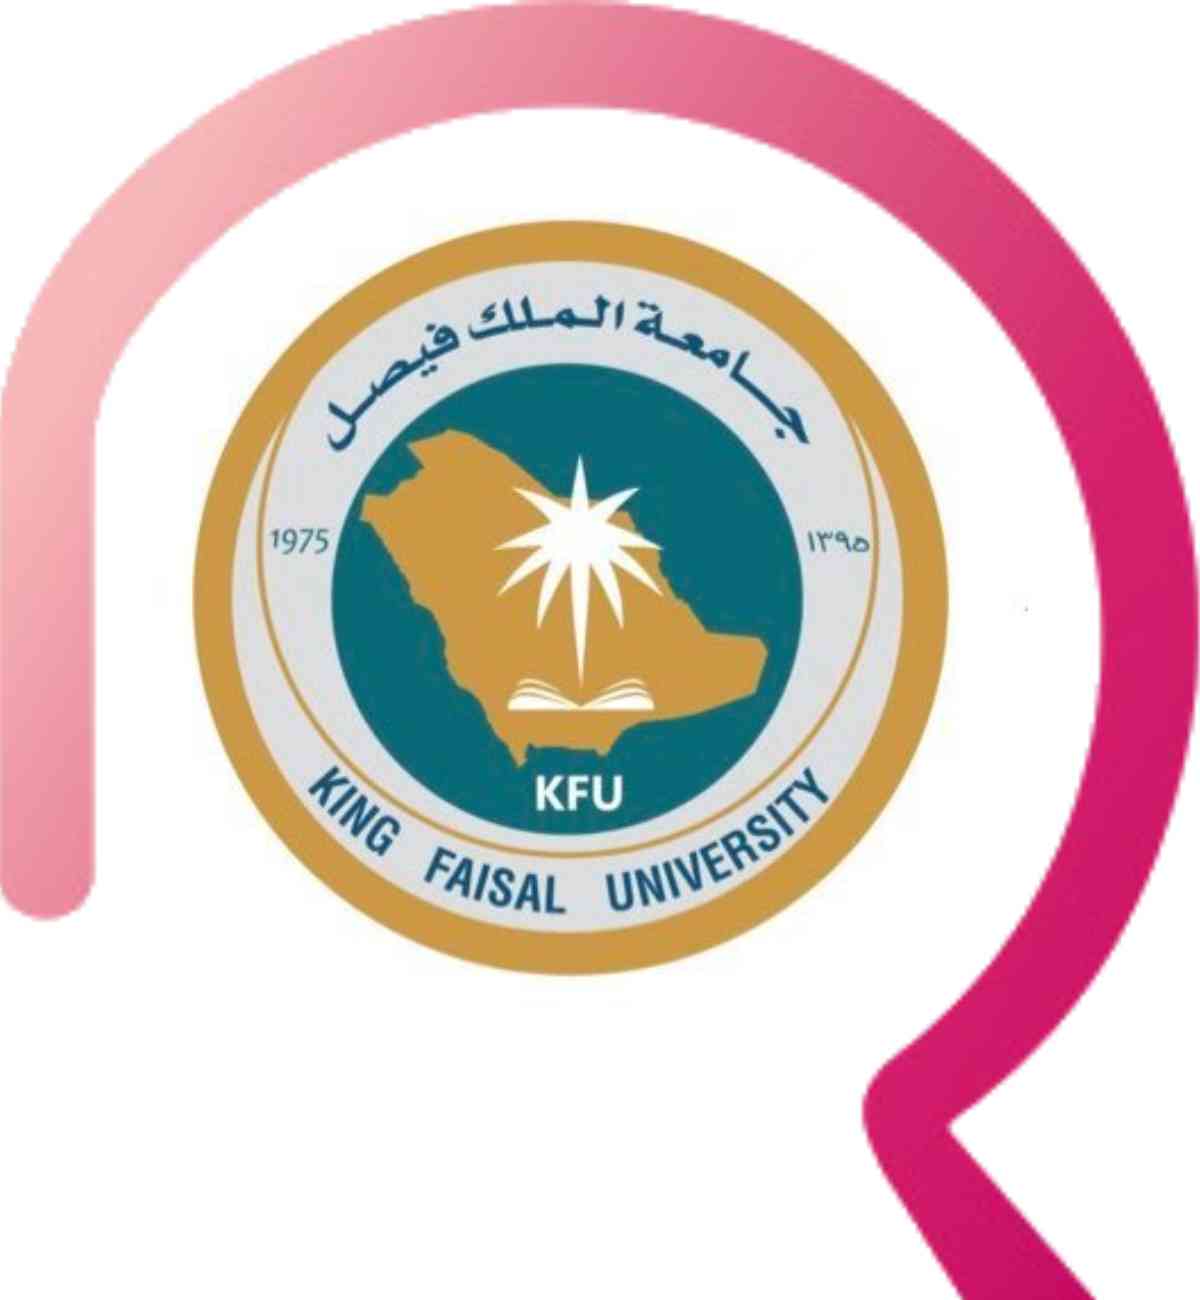 جامعة الملك فيصل عن بعد | 4 جوانب حول التعليم الإلكتروني تهم كل طالب
